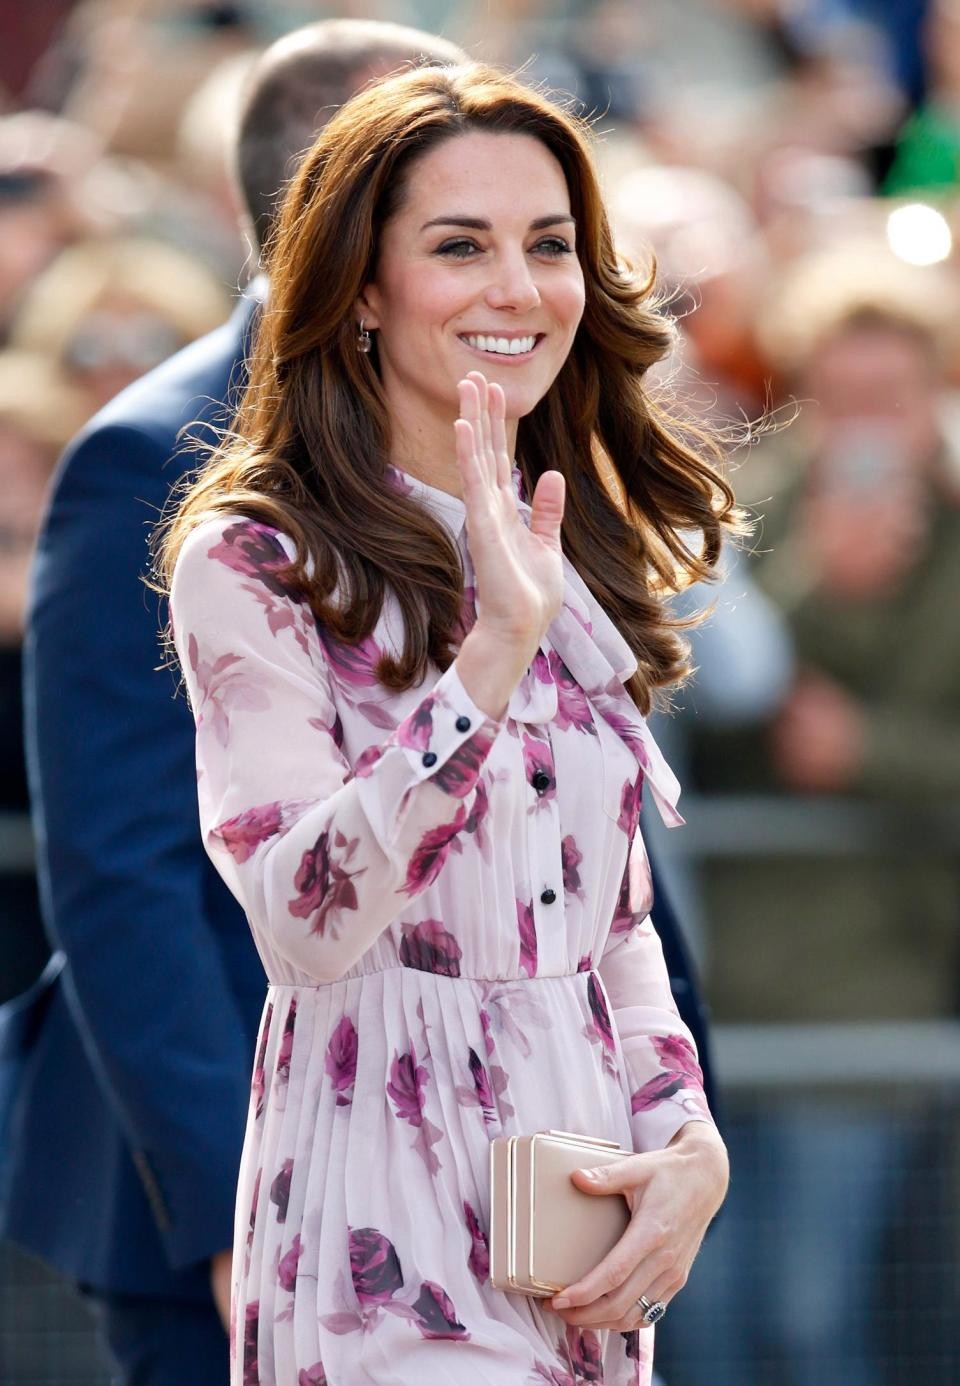 Фото © Соцсети. Герцогиня Кембриджская на праздновании Дня психического здоровья с сумочкой от Кейт Спейд